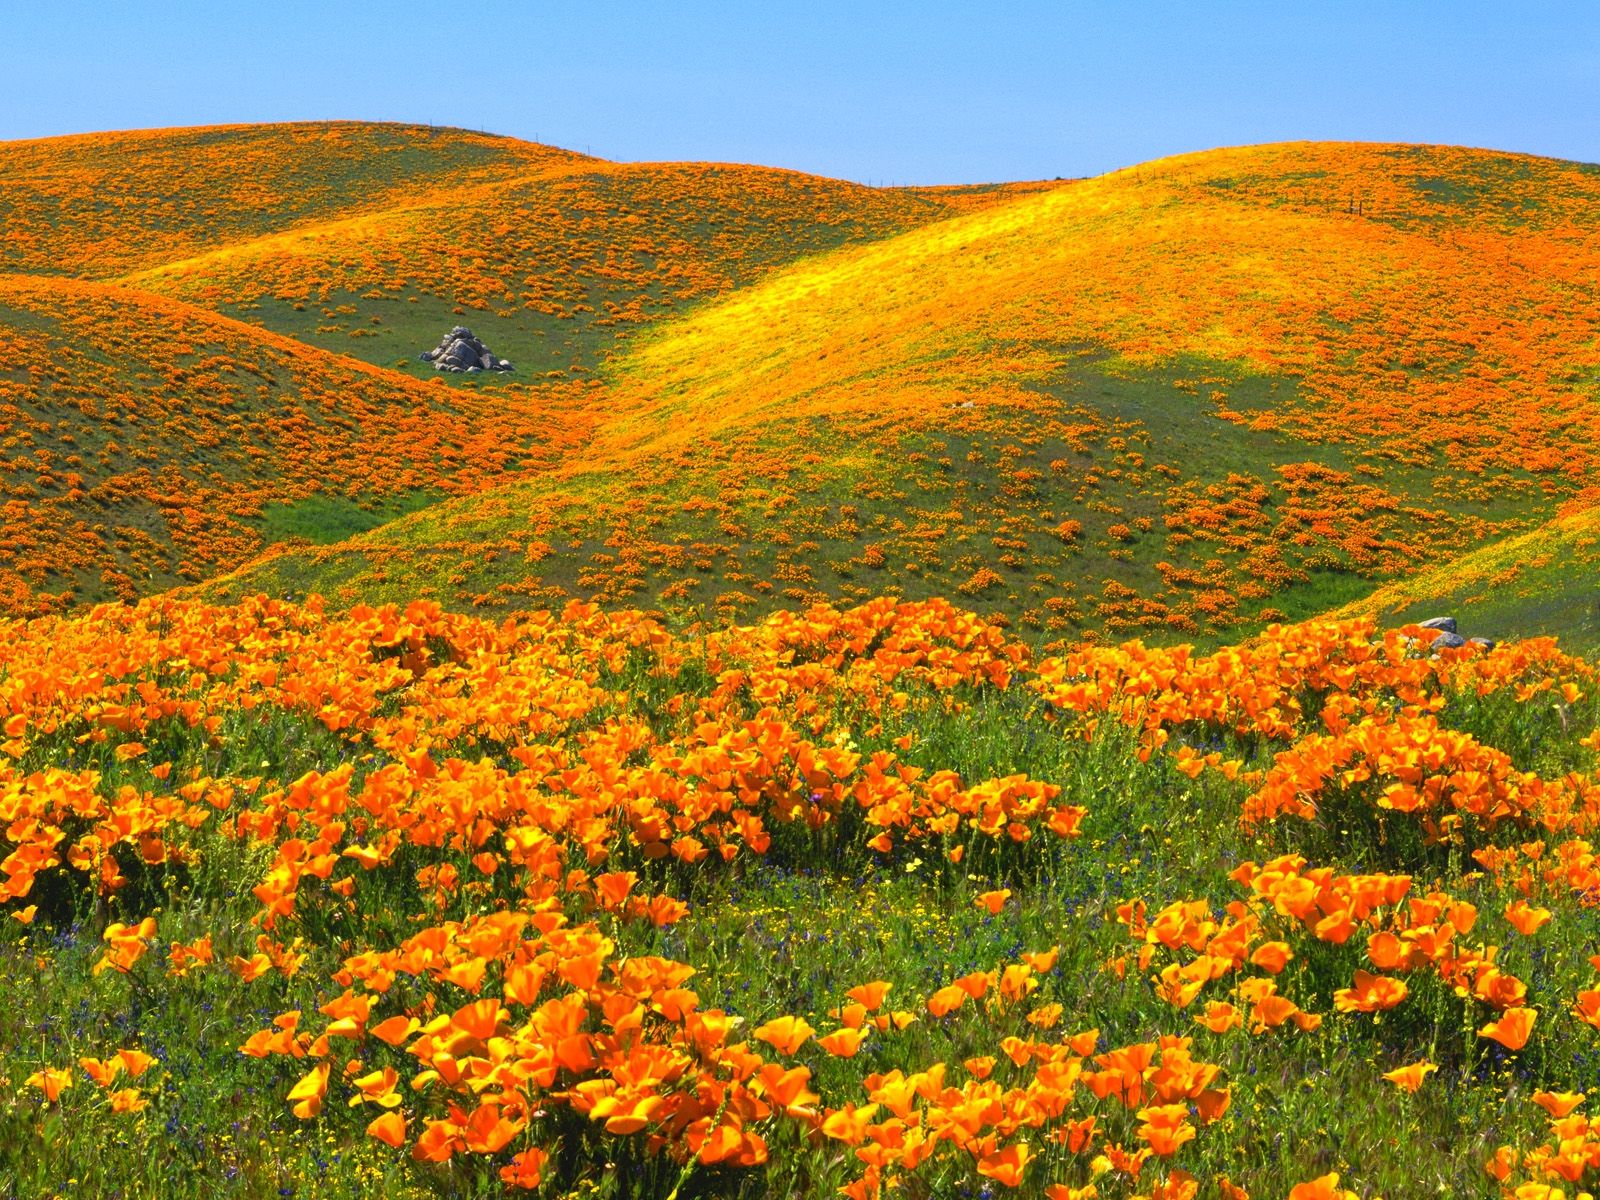 20249_landscape_orange_flowers. California poppy, California wildflowers, Flower field